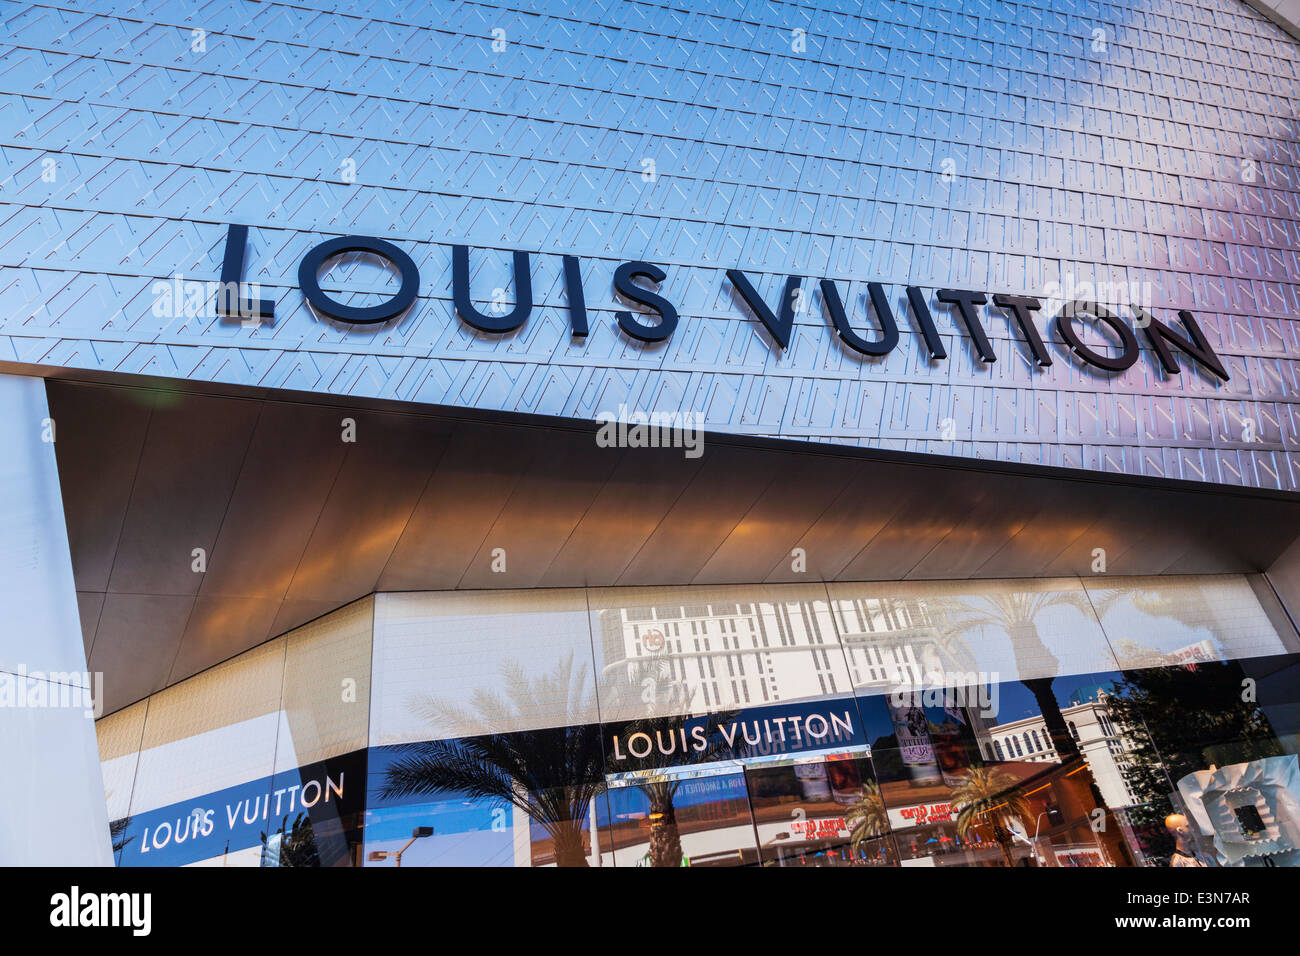 Louis Vuitton shopfront in Las Vegas, Nevada, USA Stock Photo - Alamy